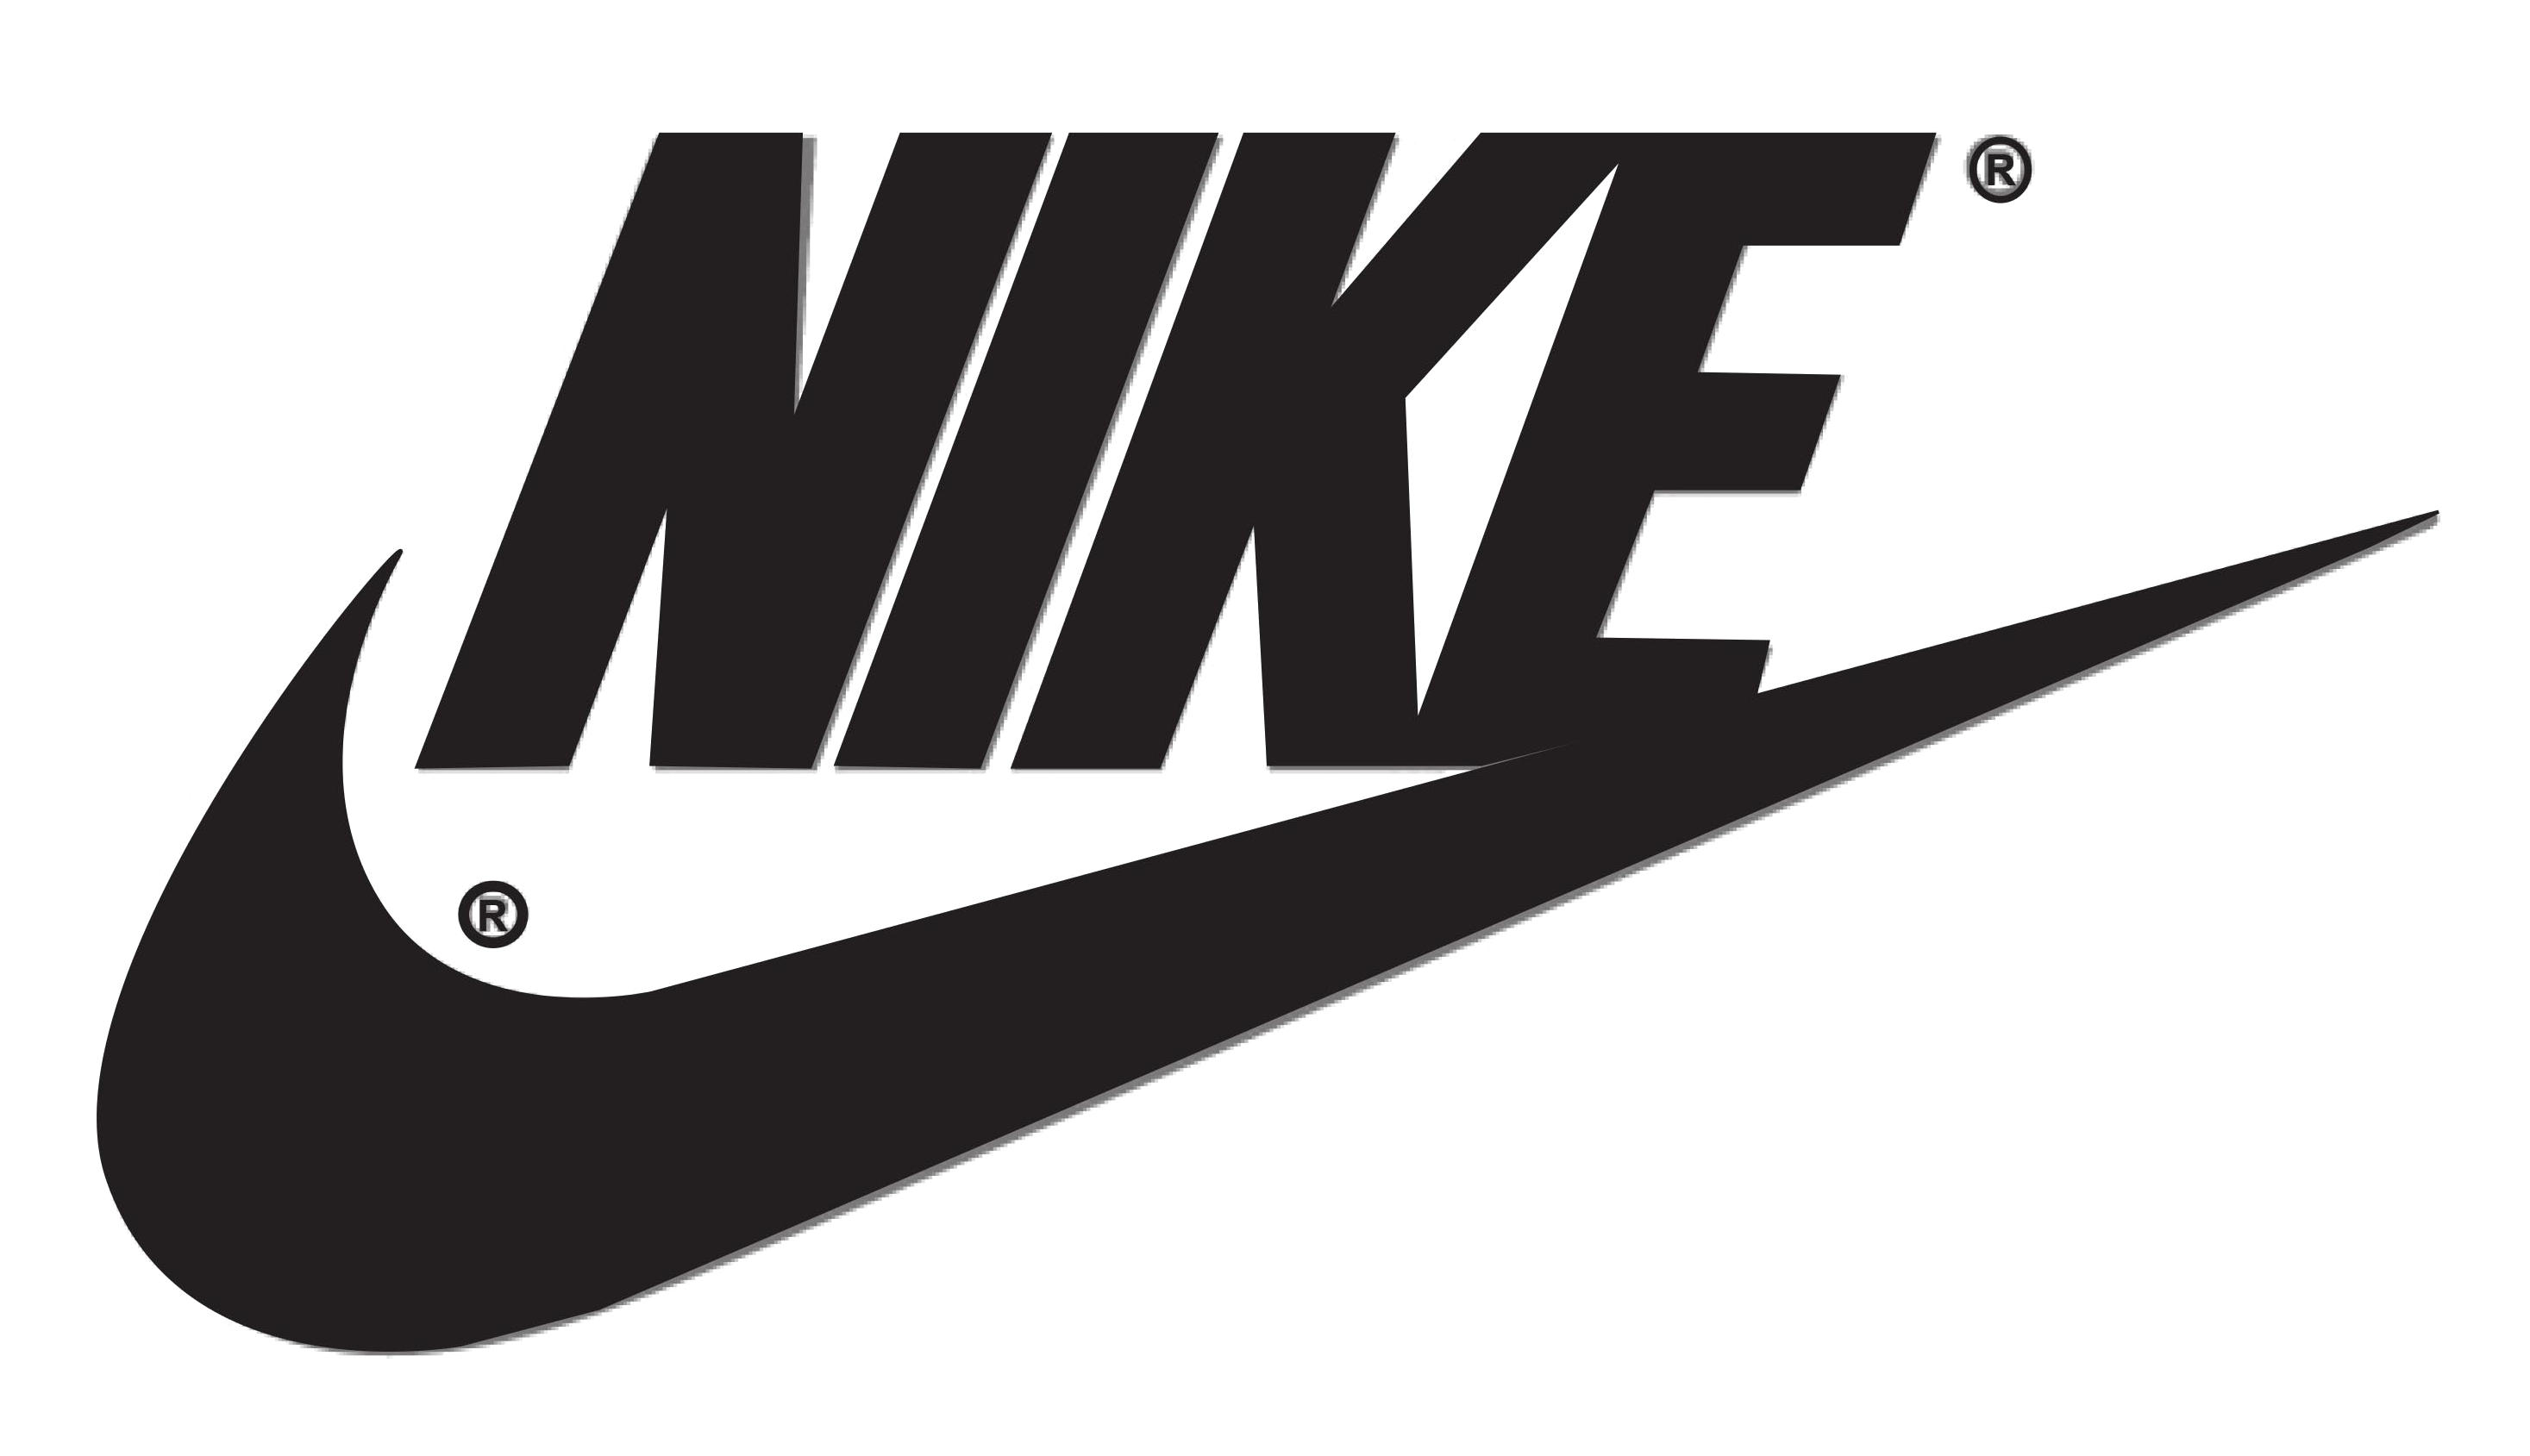 Download Nike Logo Transparent Background HQ PNG Image | FreePNGImg